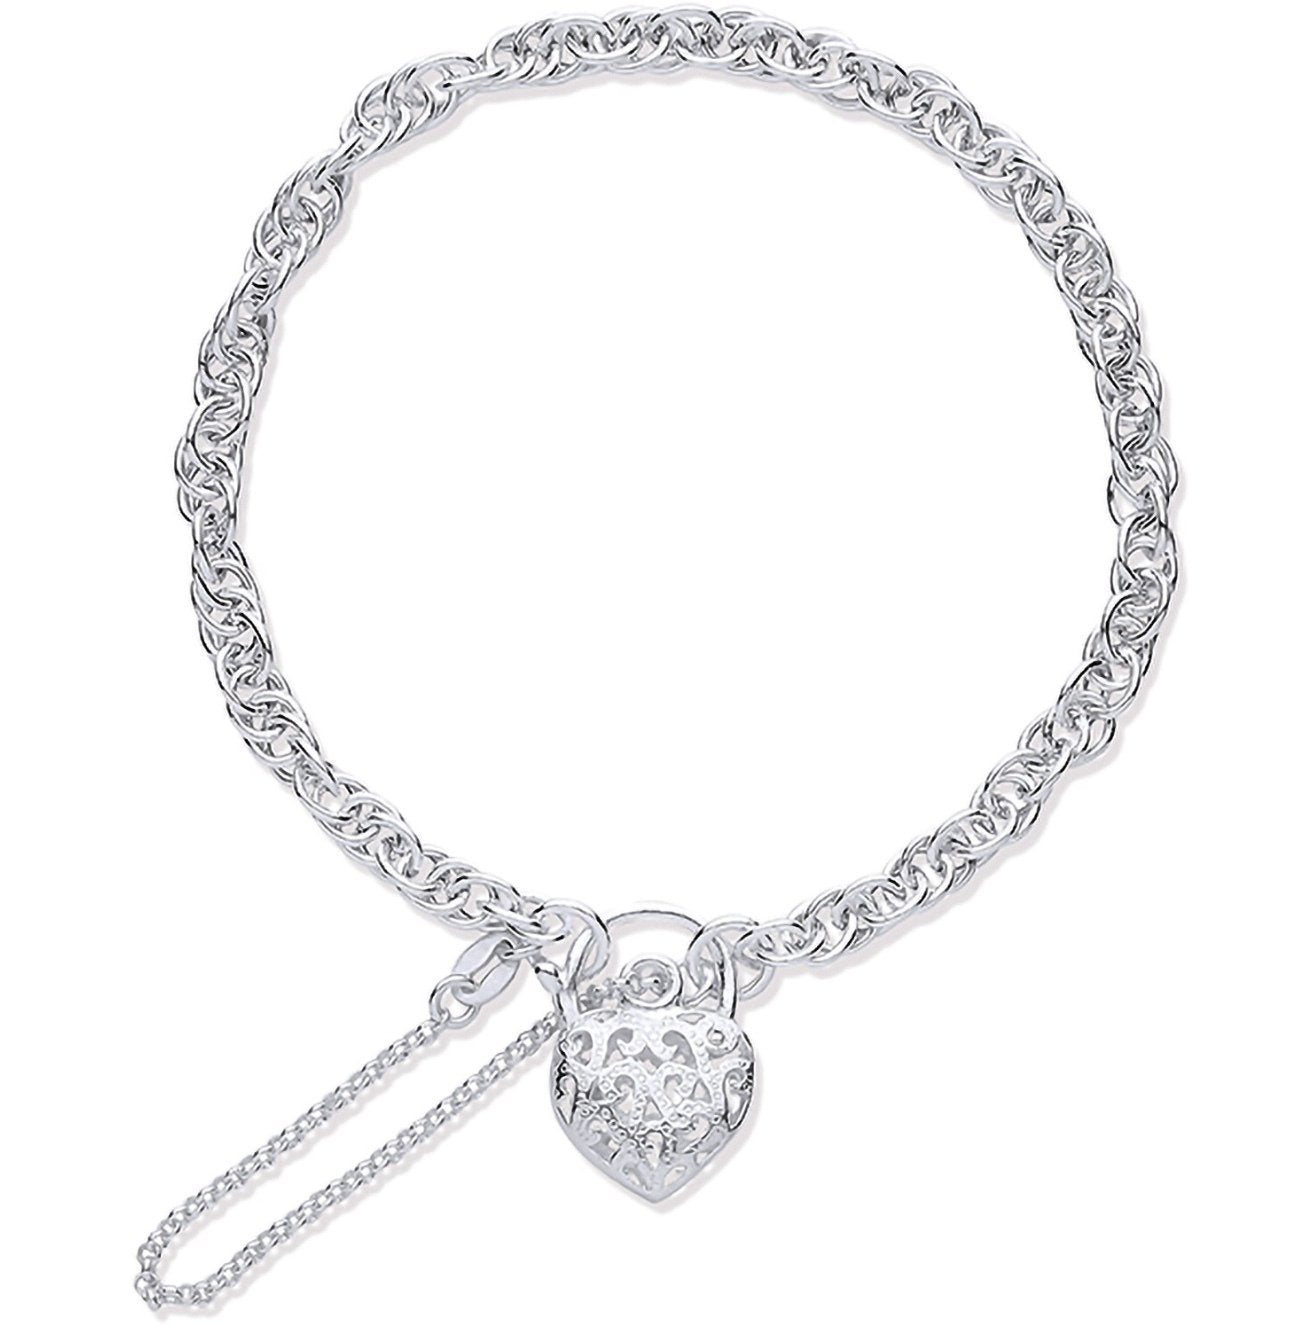 Silver Fancy Bracelet with Padlock (Sbr0353)